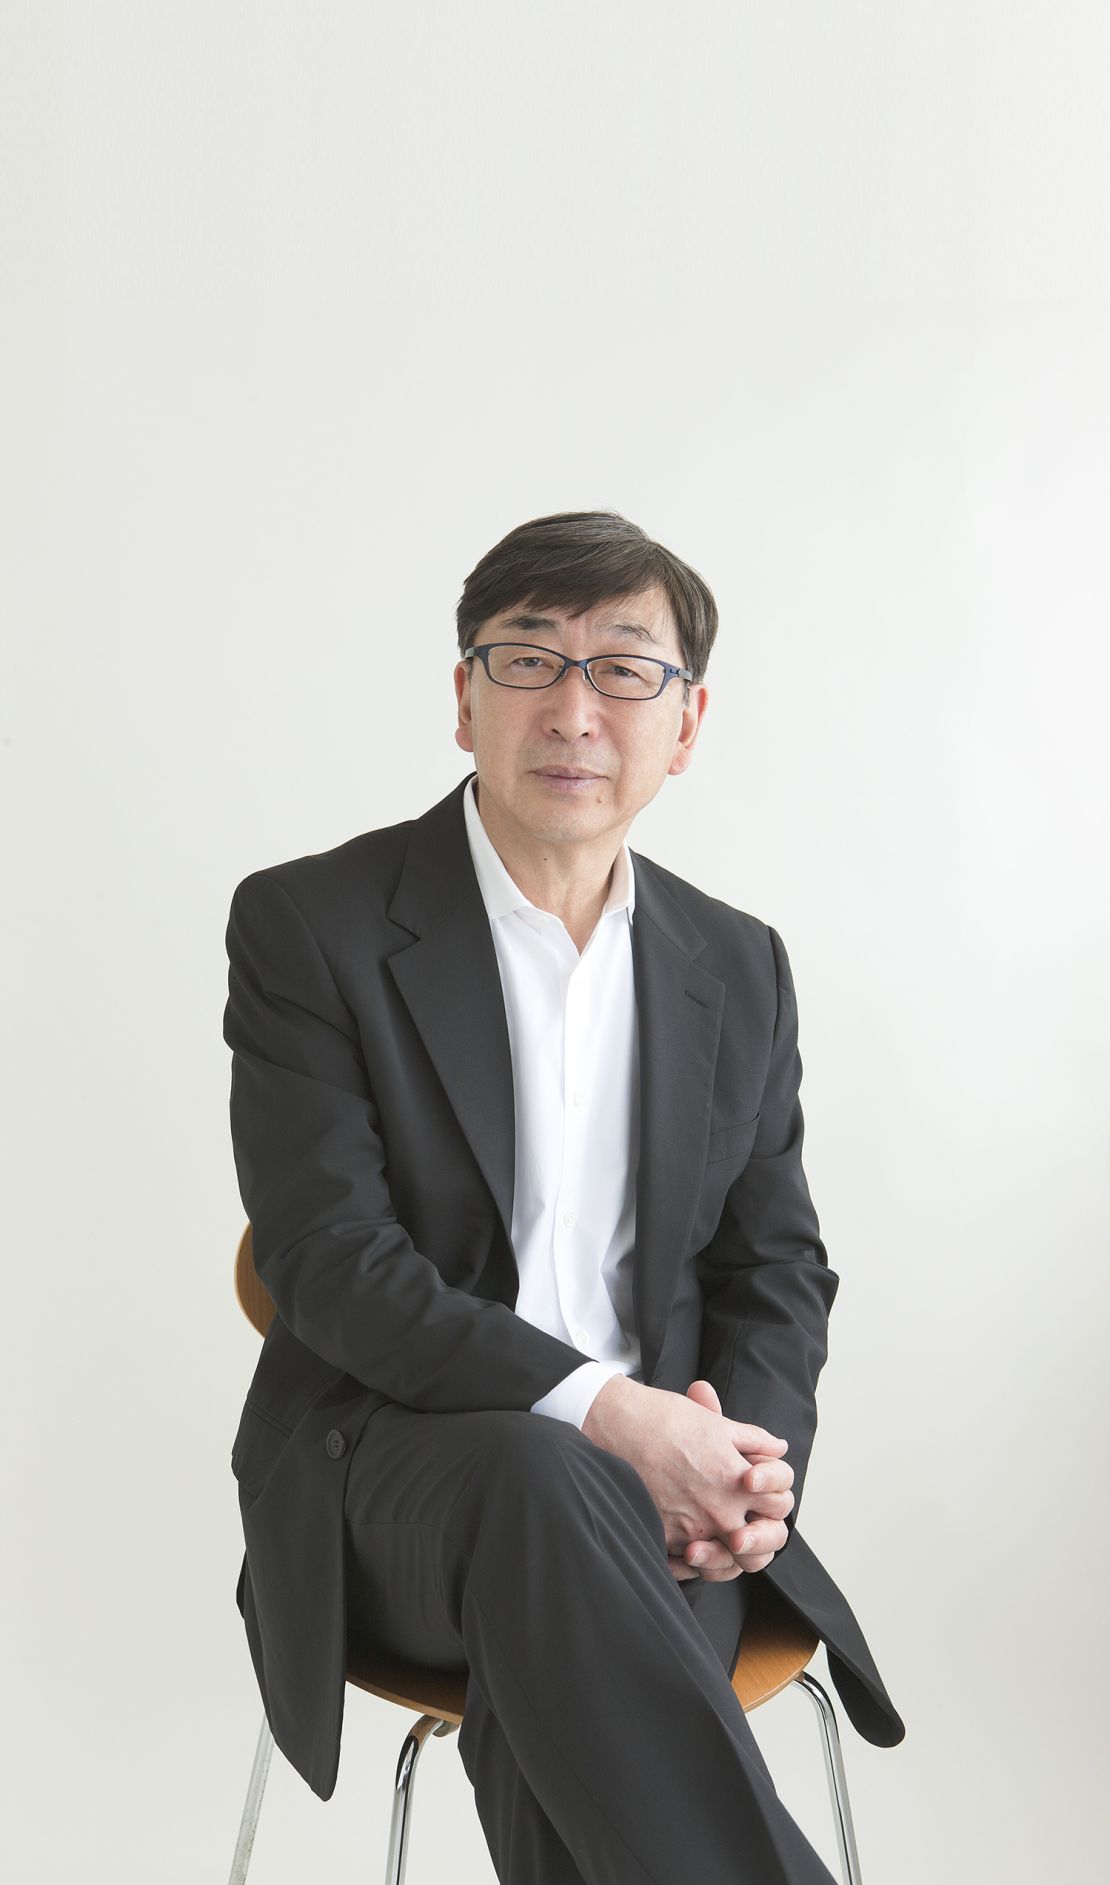 Toyo Ito, 2013 Pritzker Architecture Prize Laureate